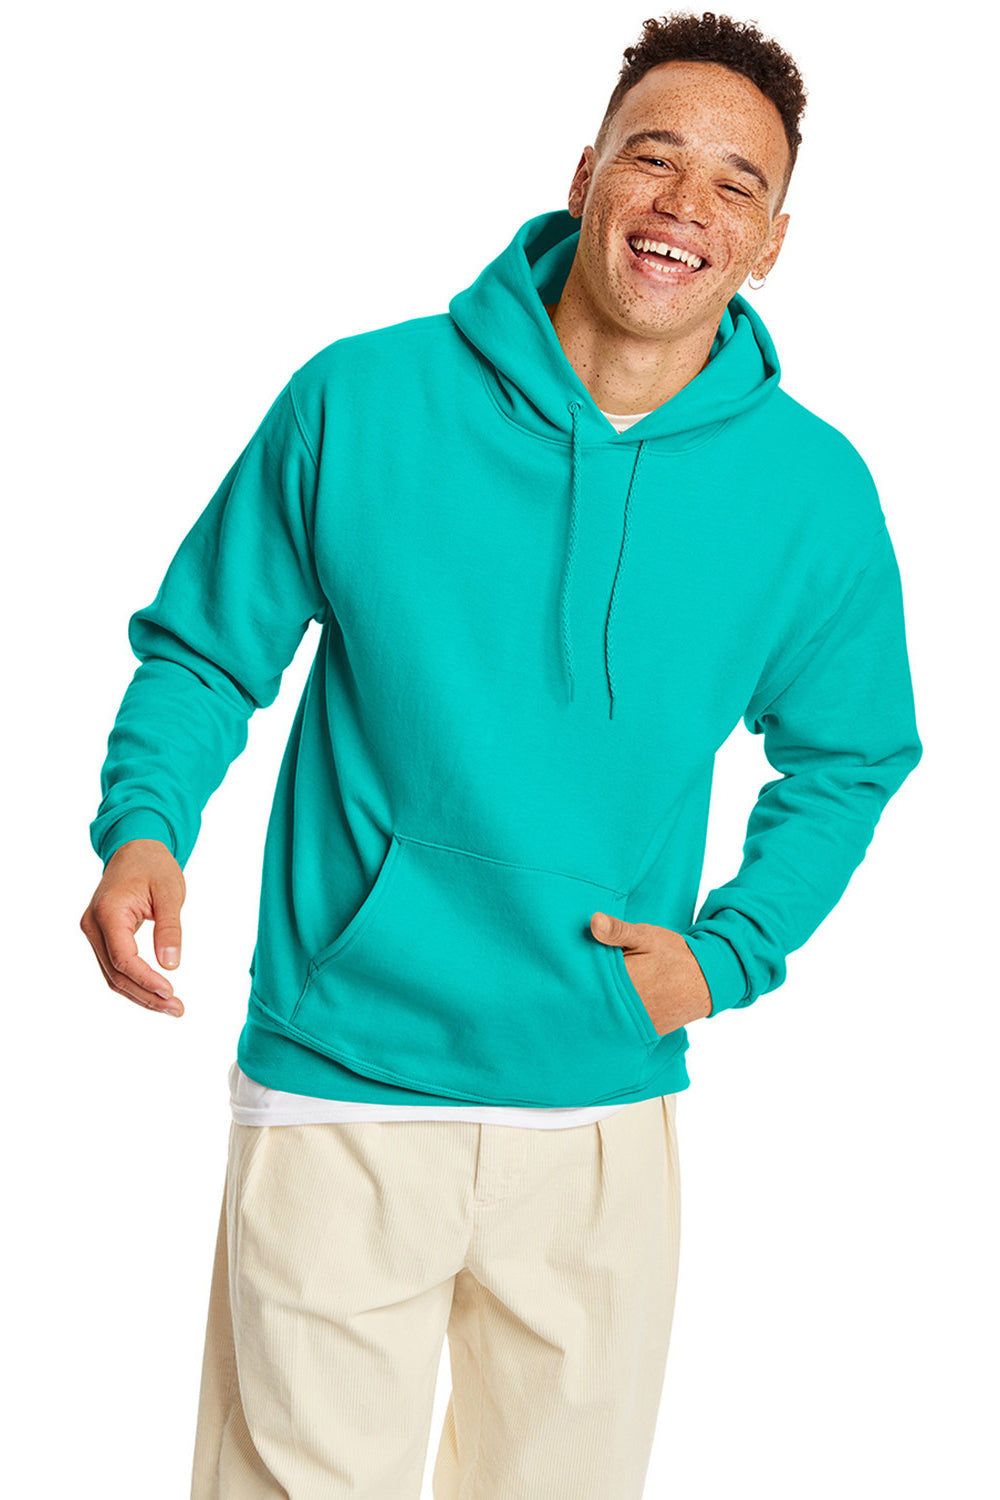 Hanes P170 Mens EcoSmart Print Pro XP Hooded Sweatshirt Hoodie Athletic Teal Green Front